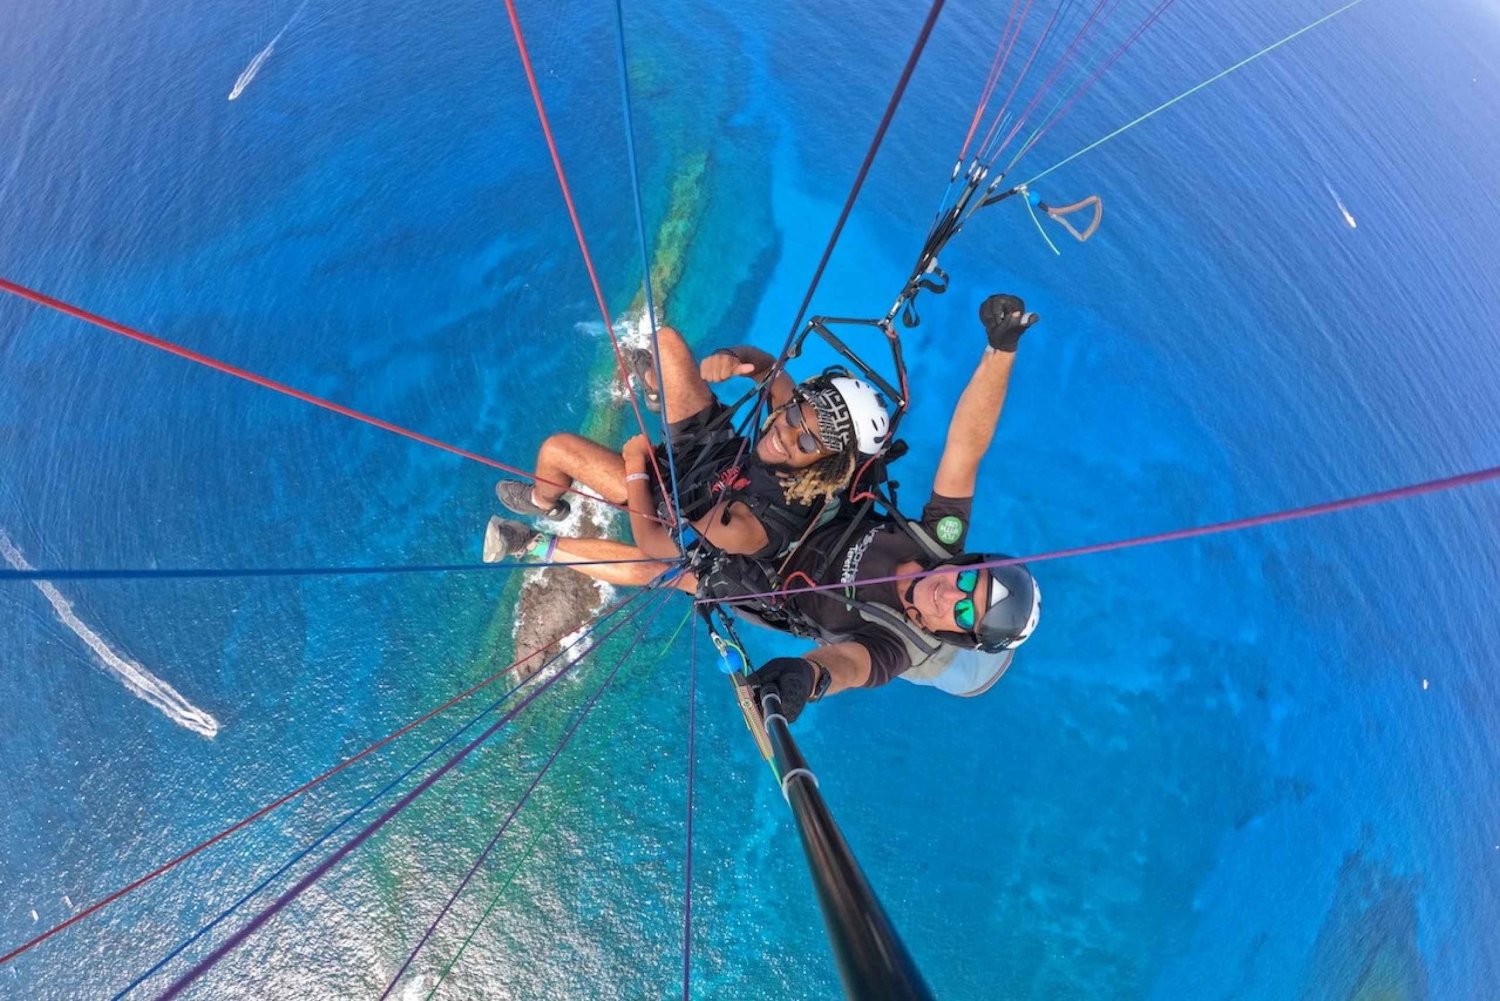 Tenerife: Tandem Paragliding Flight